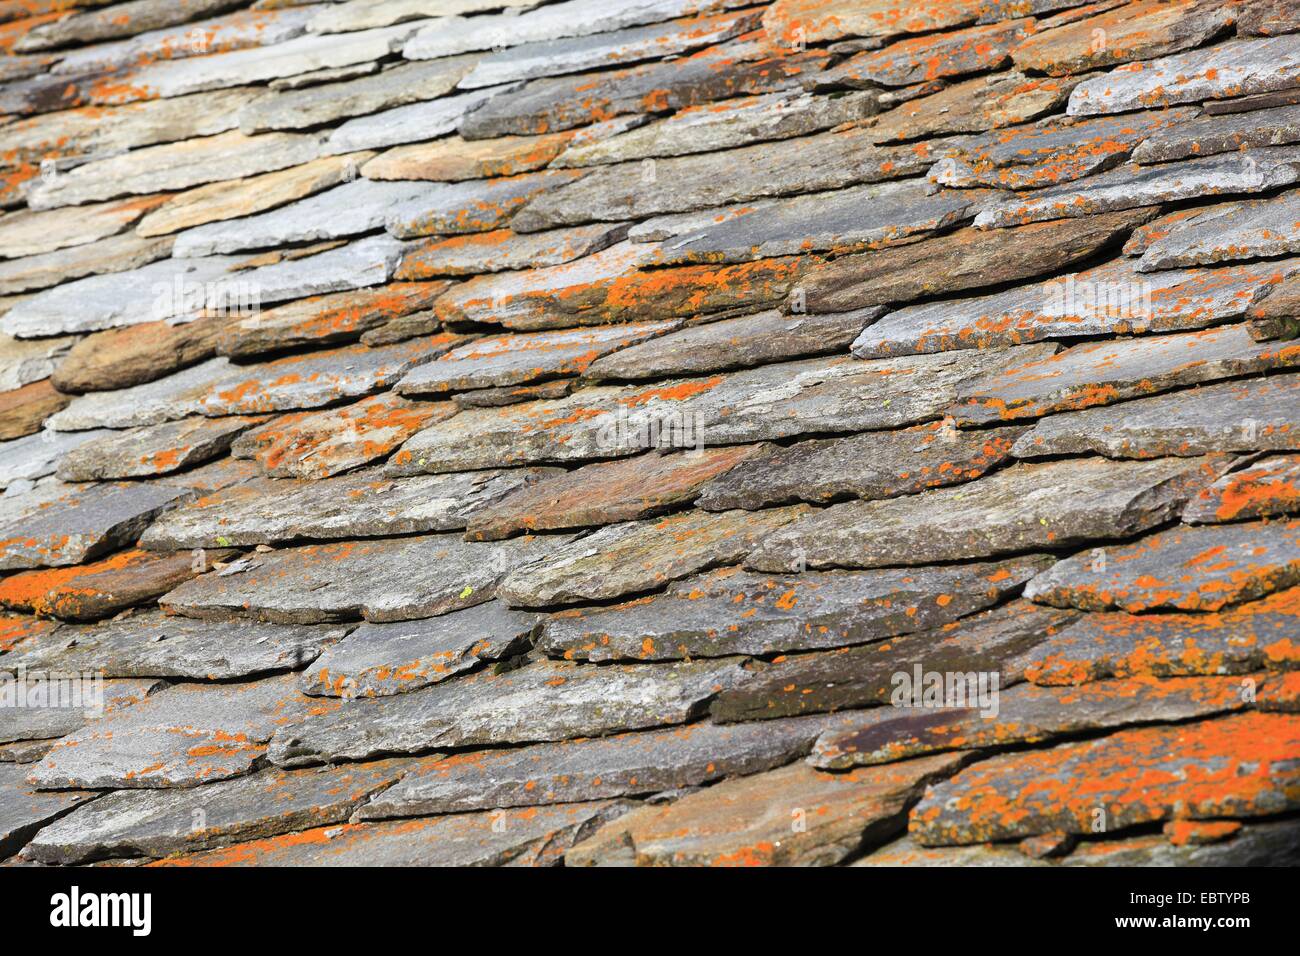 flagstone roof, Switzerland Stock Photo